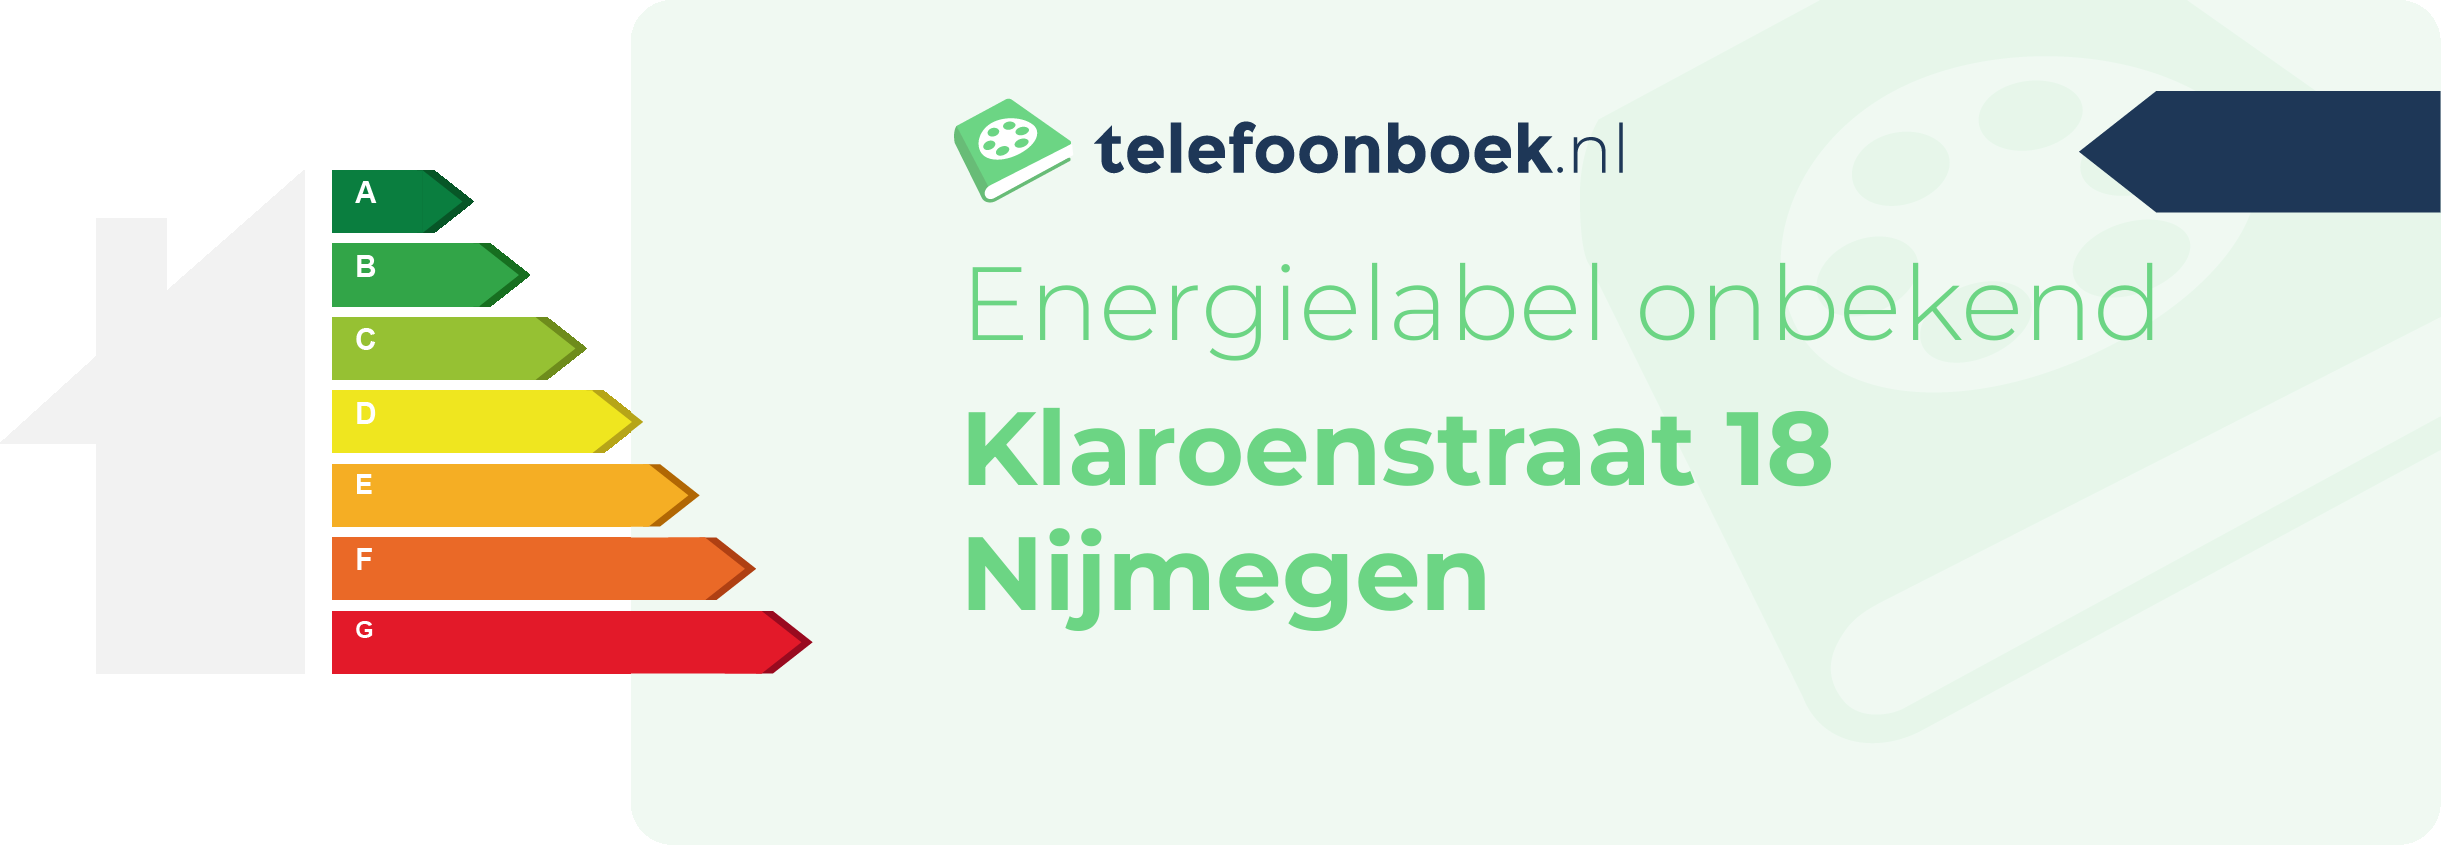 Energielabel Klaroenstraat 18 Nijmegen